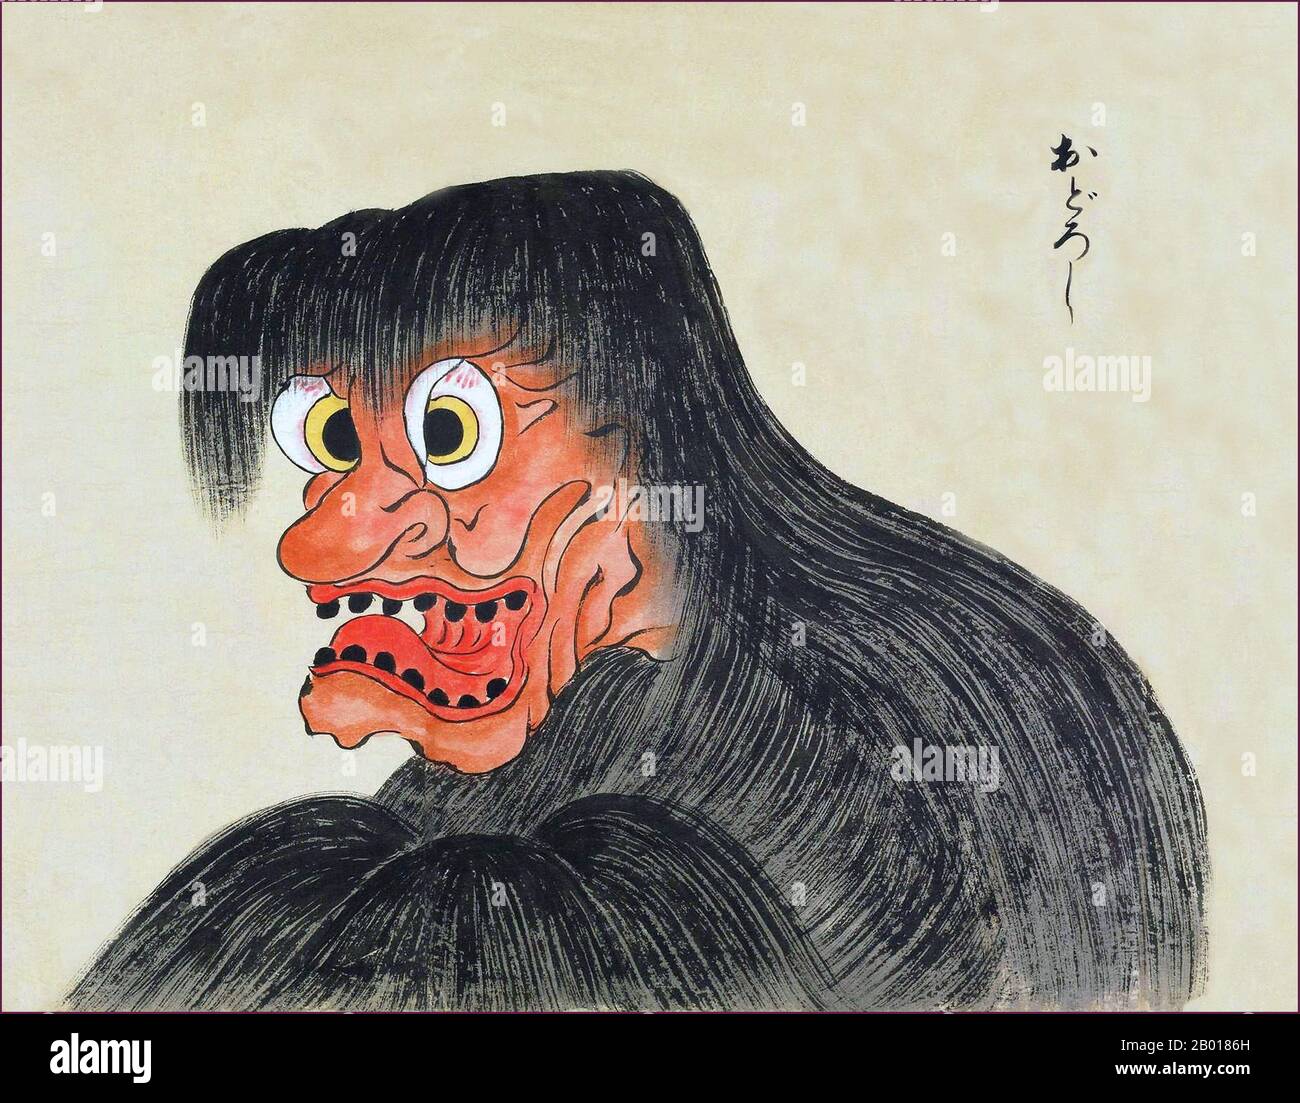 Japon: L'Odoroshi est un monstre à face rouge avec de grands yeux, des dents noires et des cheveux longs.Du Bakemono Zukushi Monster Scroll, époque Edo (1603-1868), 18th-19th siècle.Le bakemono Zukushi Handscroll, peint dans la période Edo (18th-19th siècle) par un artiste inconnu, dépeint 24 monstres traditionnels qui hantent traditionnellement des gens et des localités au Japon. Banque D'Images